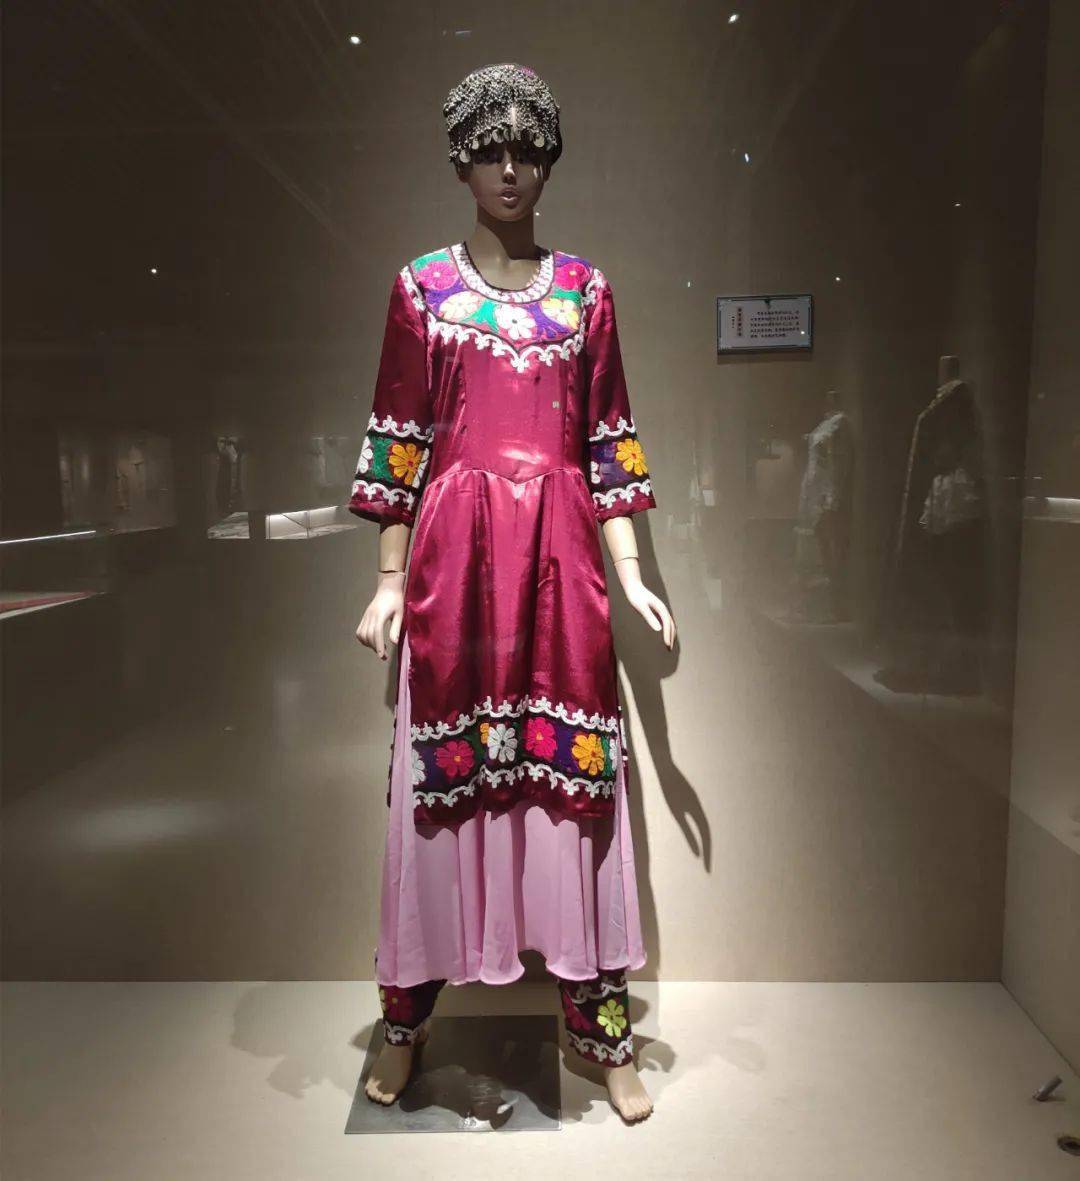 以农业为主的民族服饰融合了南方民族服饰的一些特点,服装有上衣下裳